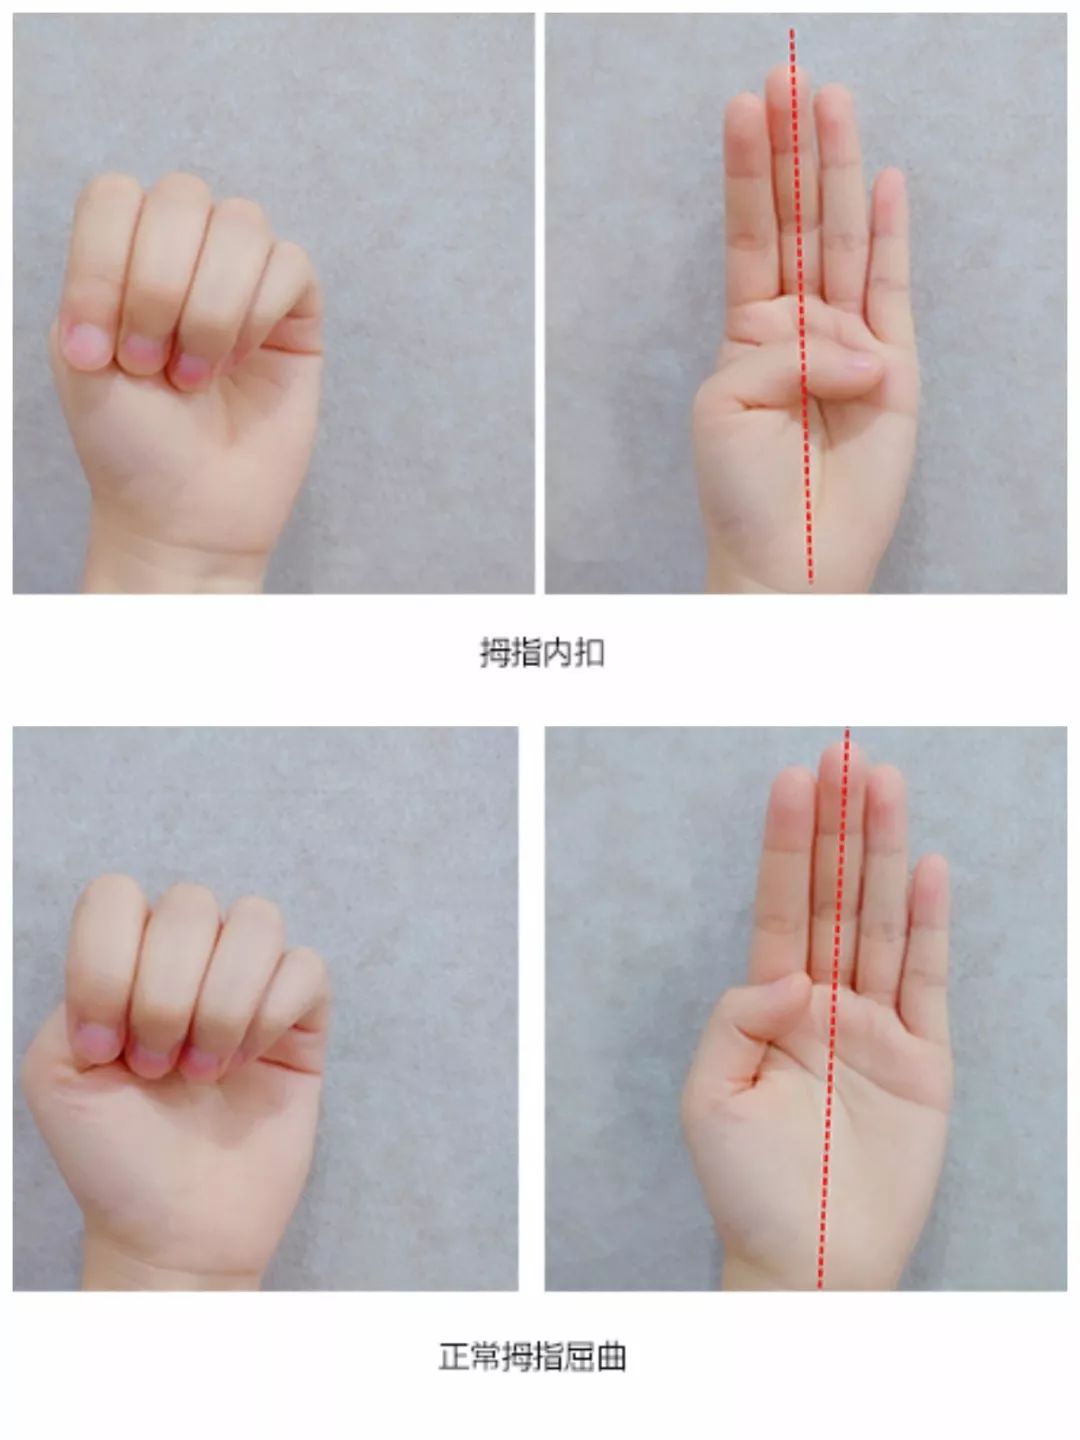 网上说拇指内扣可能是脑瘫,为什么又有人说拇指内扣是正常呢?